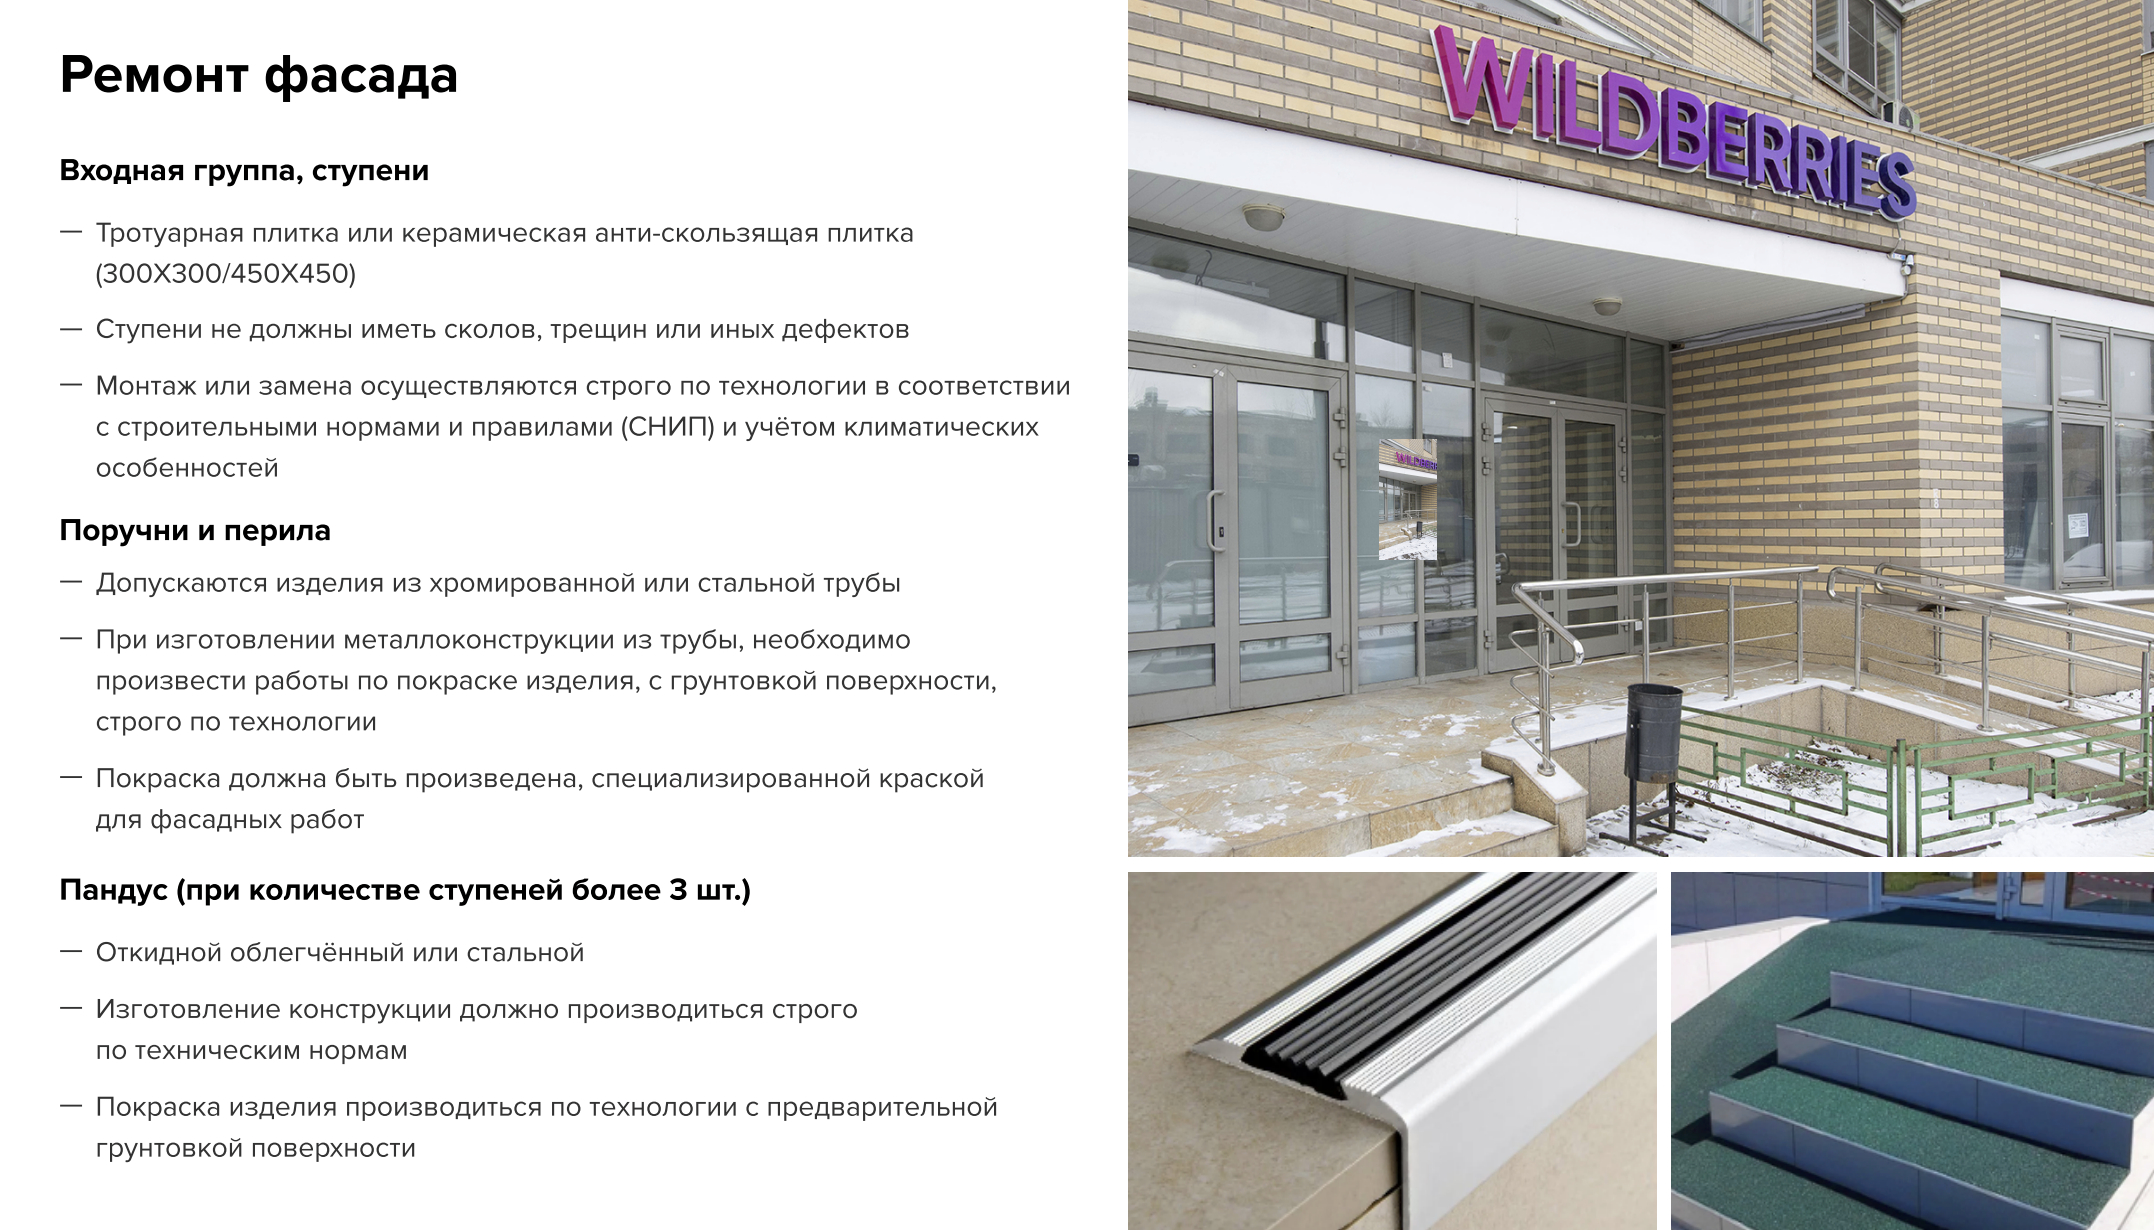 В брендбуках часто есть инструкции не только для ремонта помещения внутри, но и для оформления фасадов и входной группы. Источник: point-promo.wb.ru